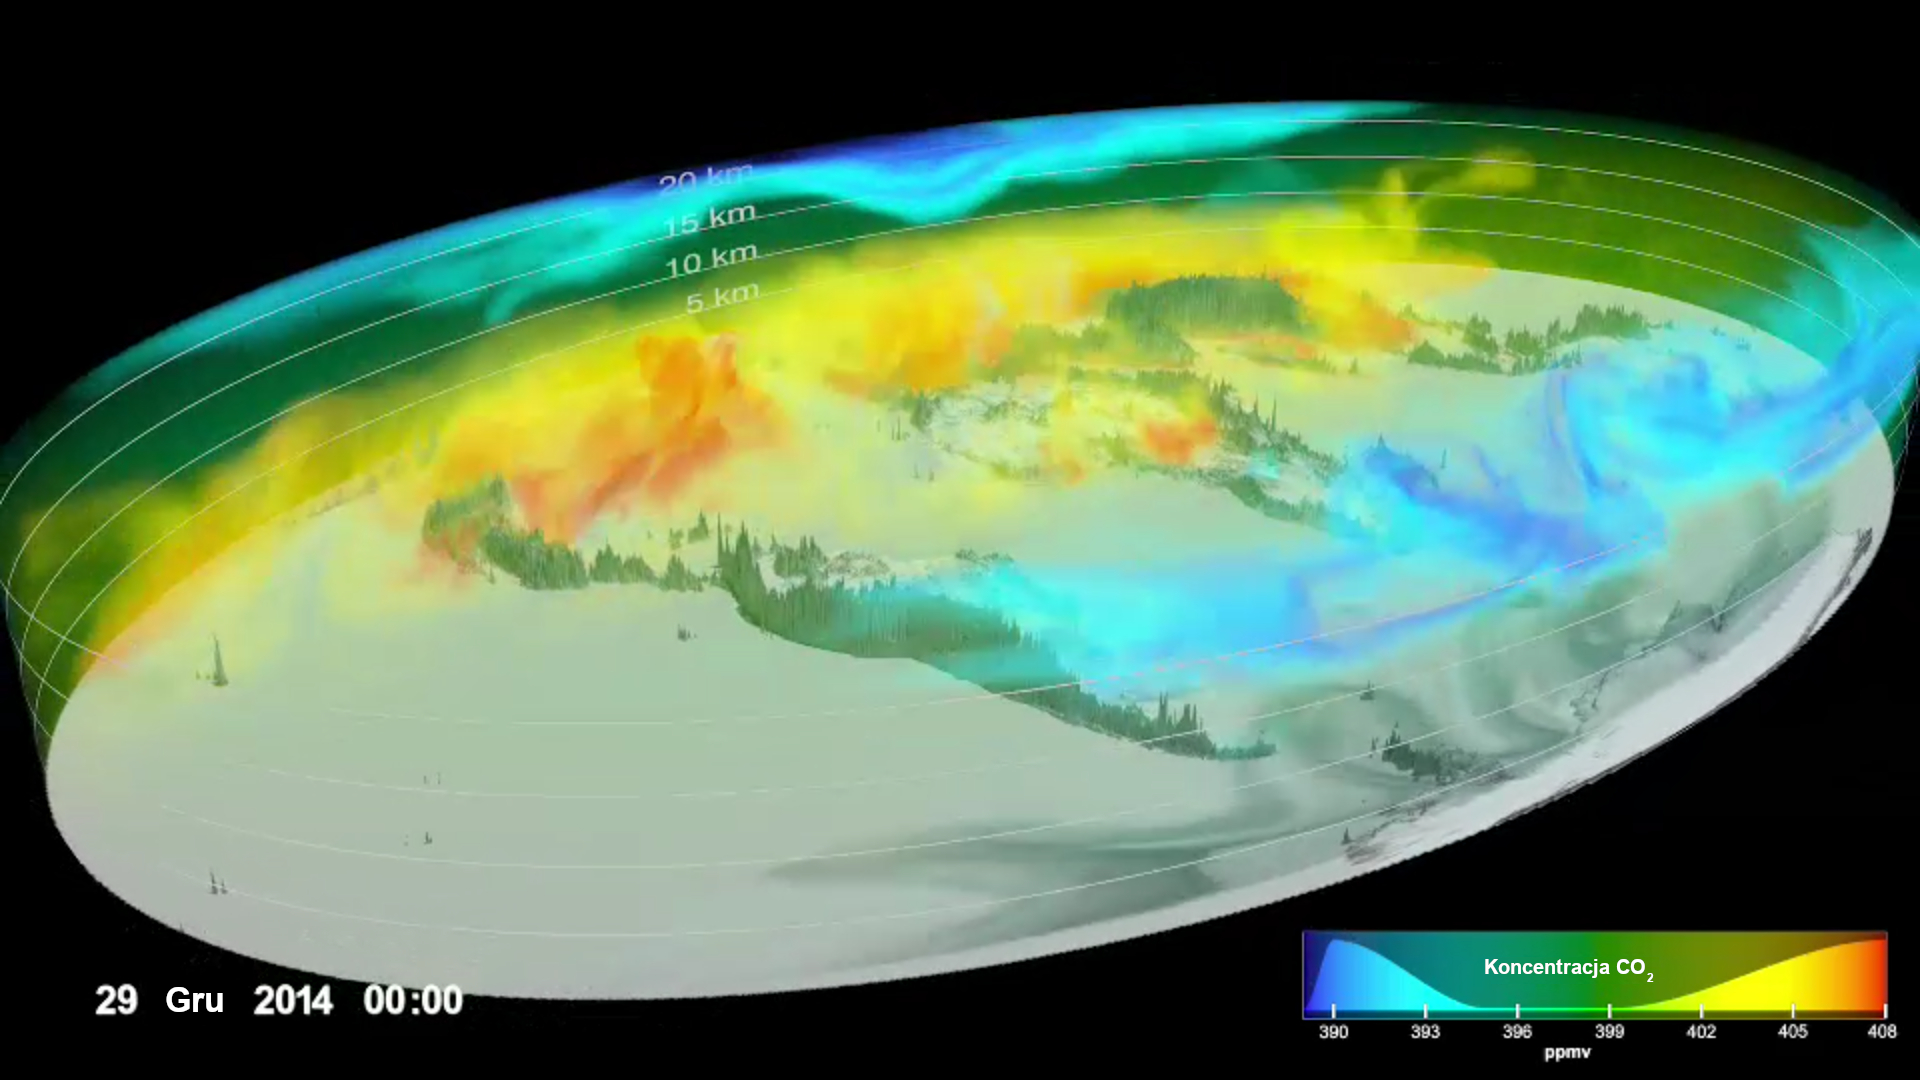 Grafika dekoracyjna: trójwymiarowa mapa koncentracji CO2 w atmosferze.